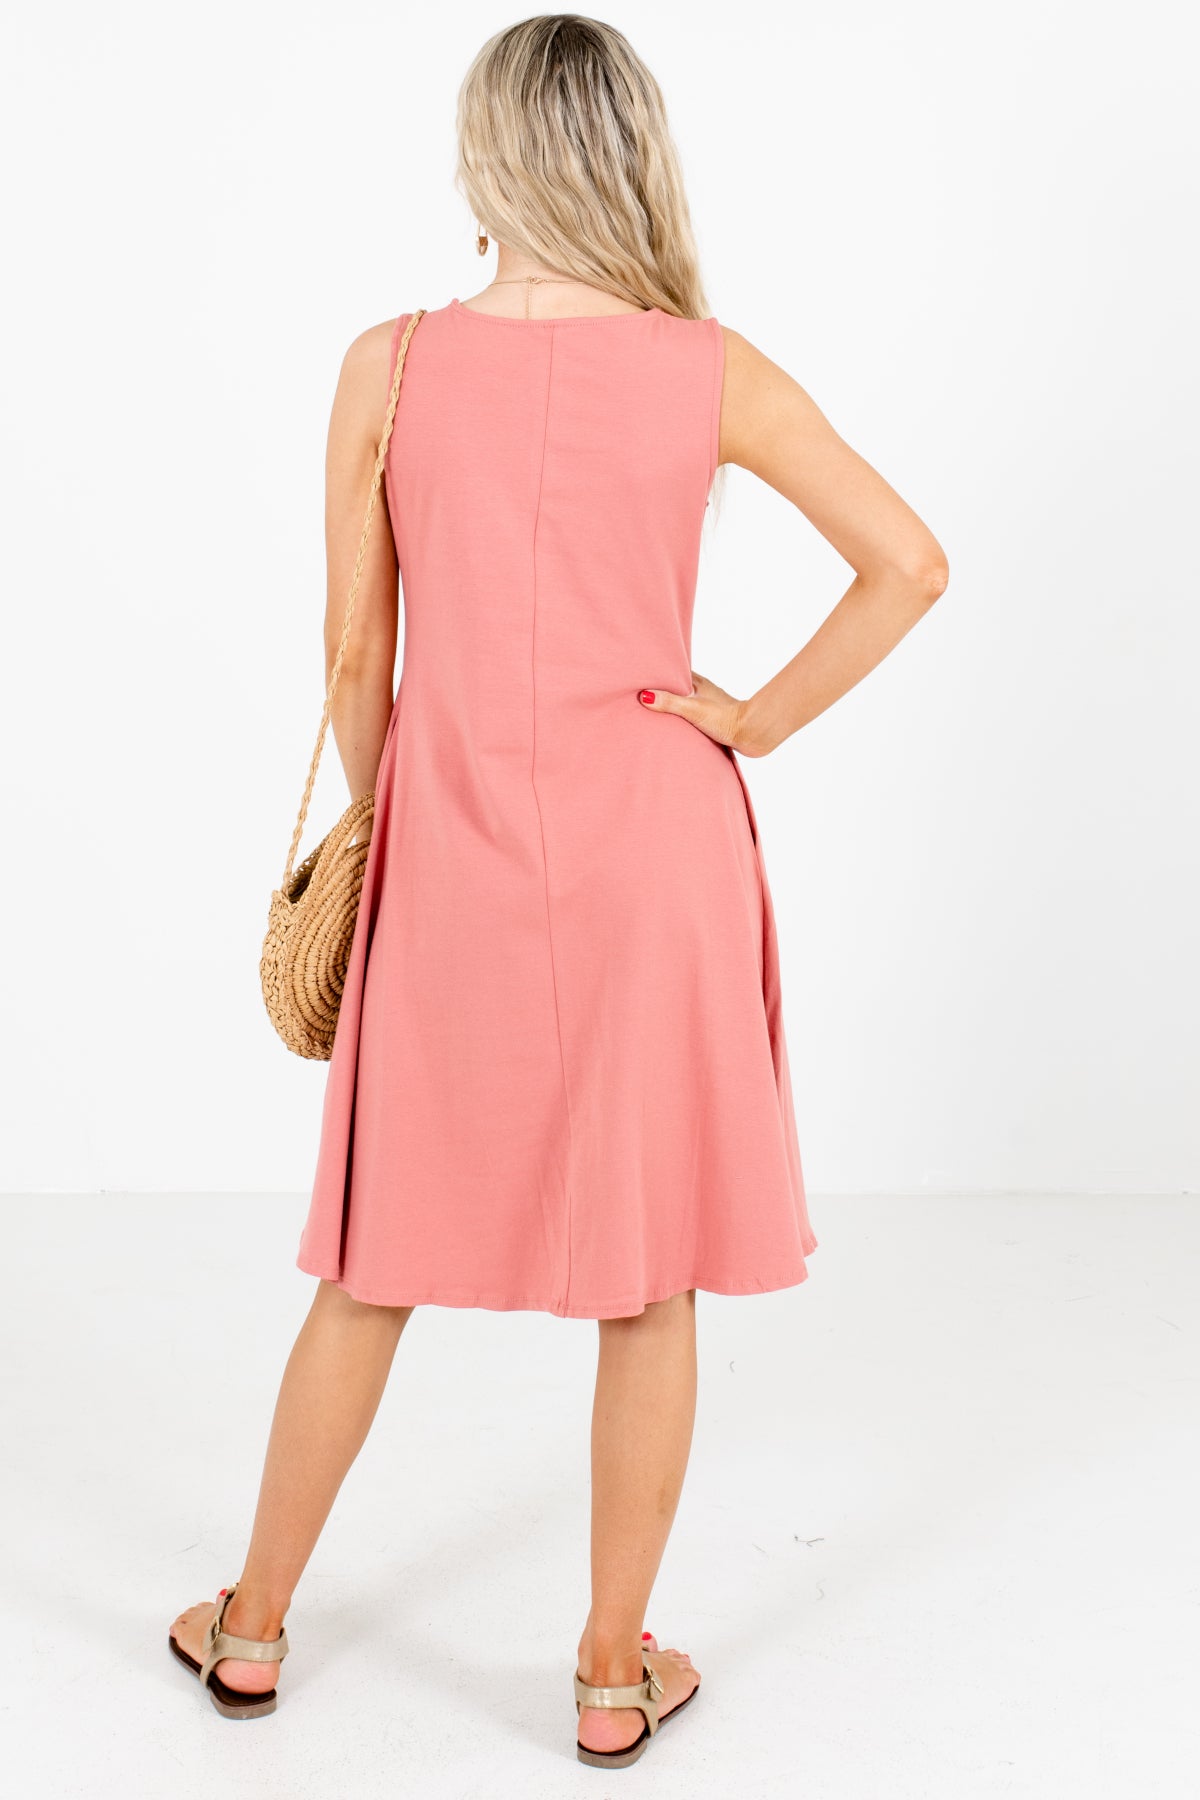 Women's Pink Round Neckline Boutique Knee-Length Dress